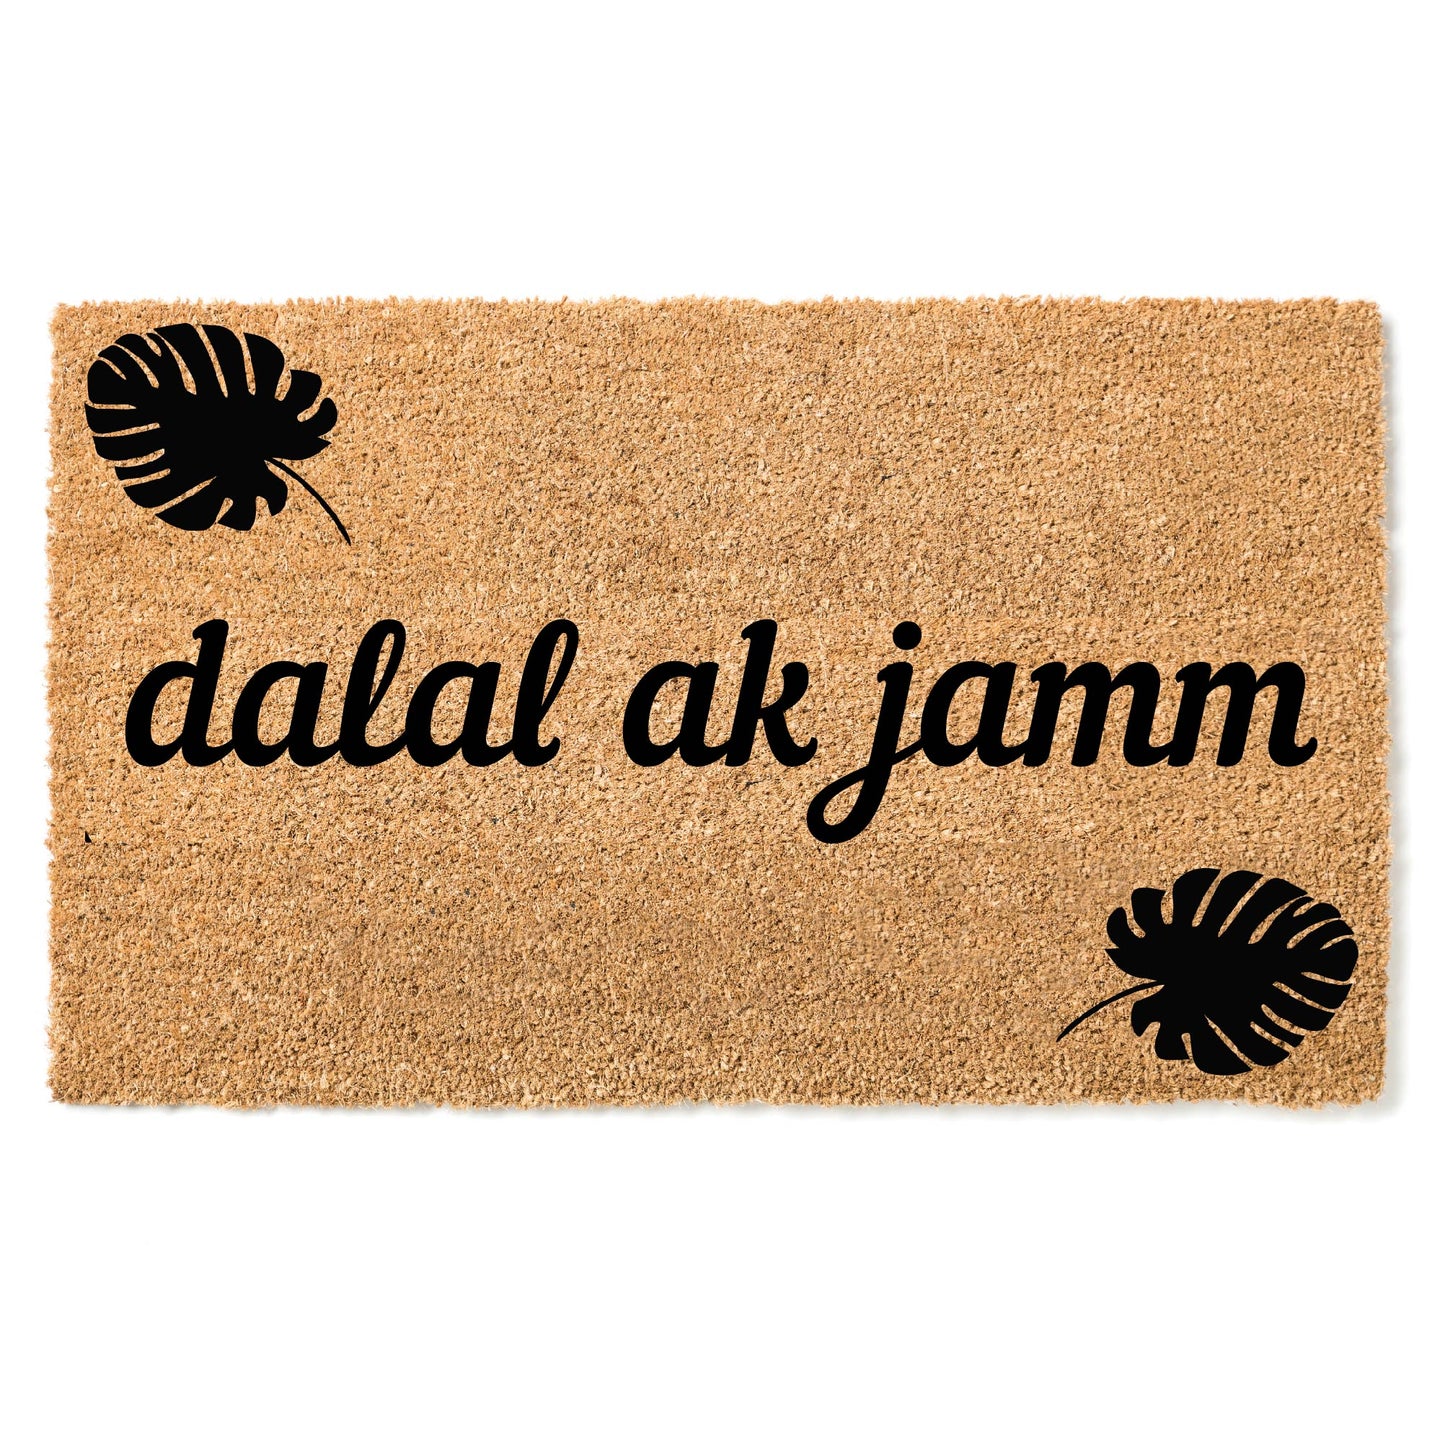 "Dalal ak jamm" door mat- "Welcome" in Wolof